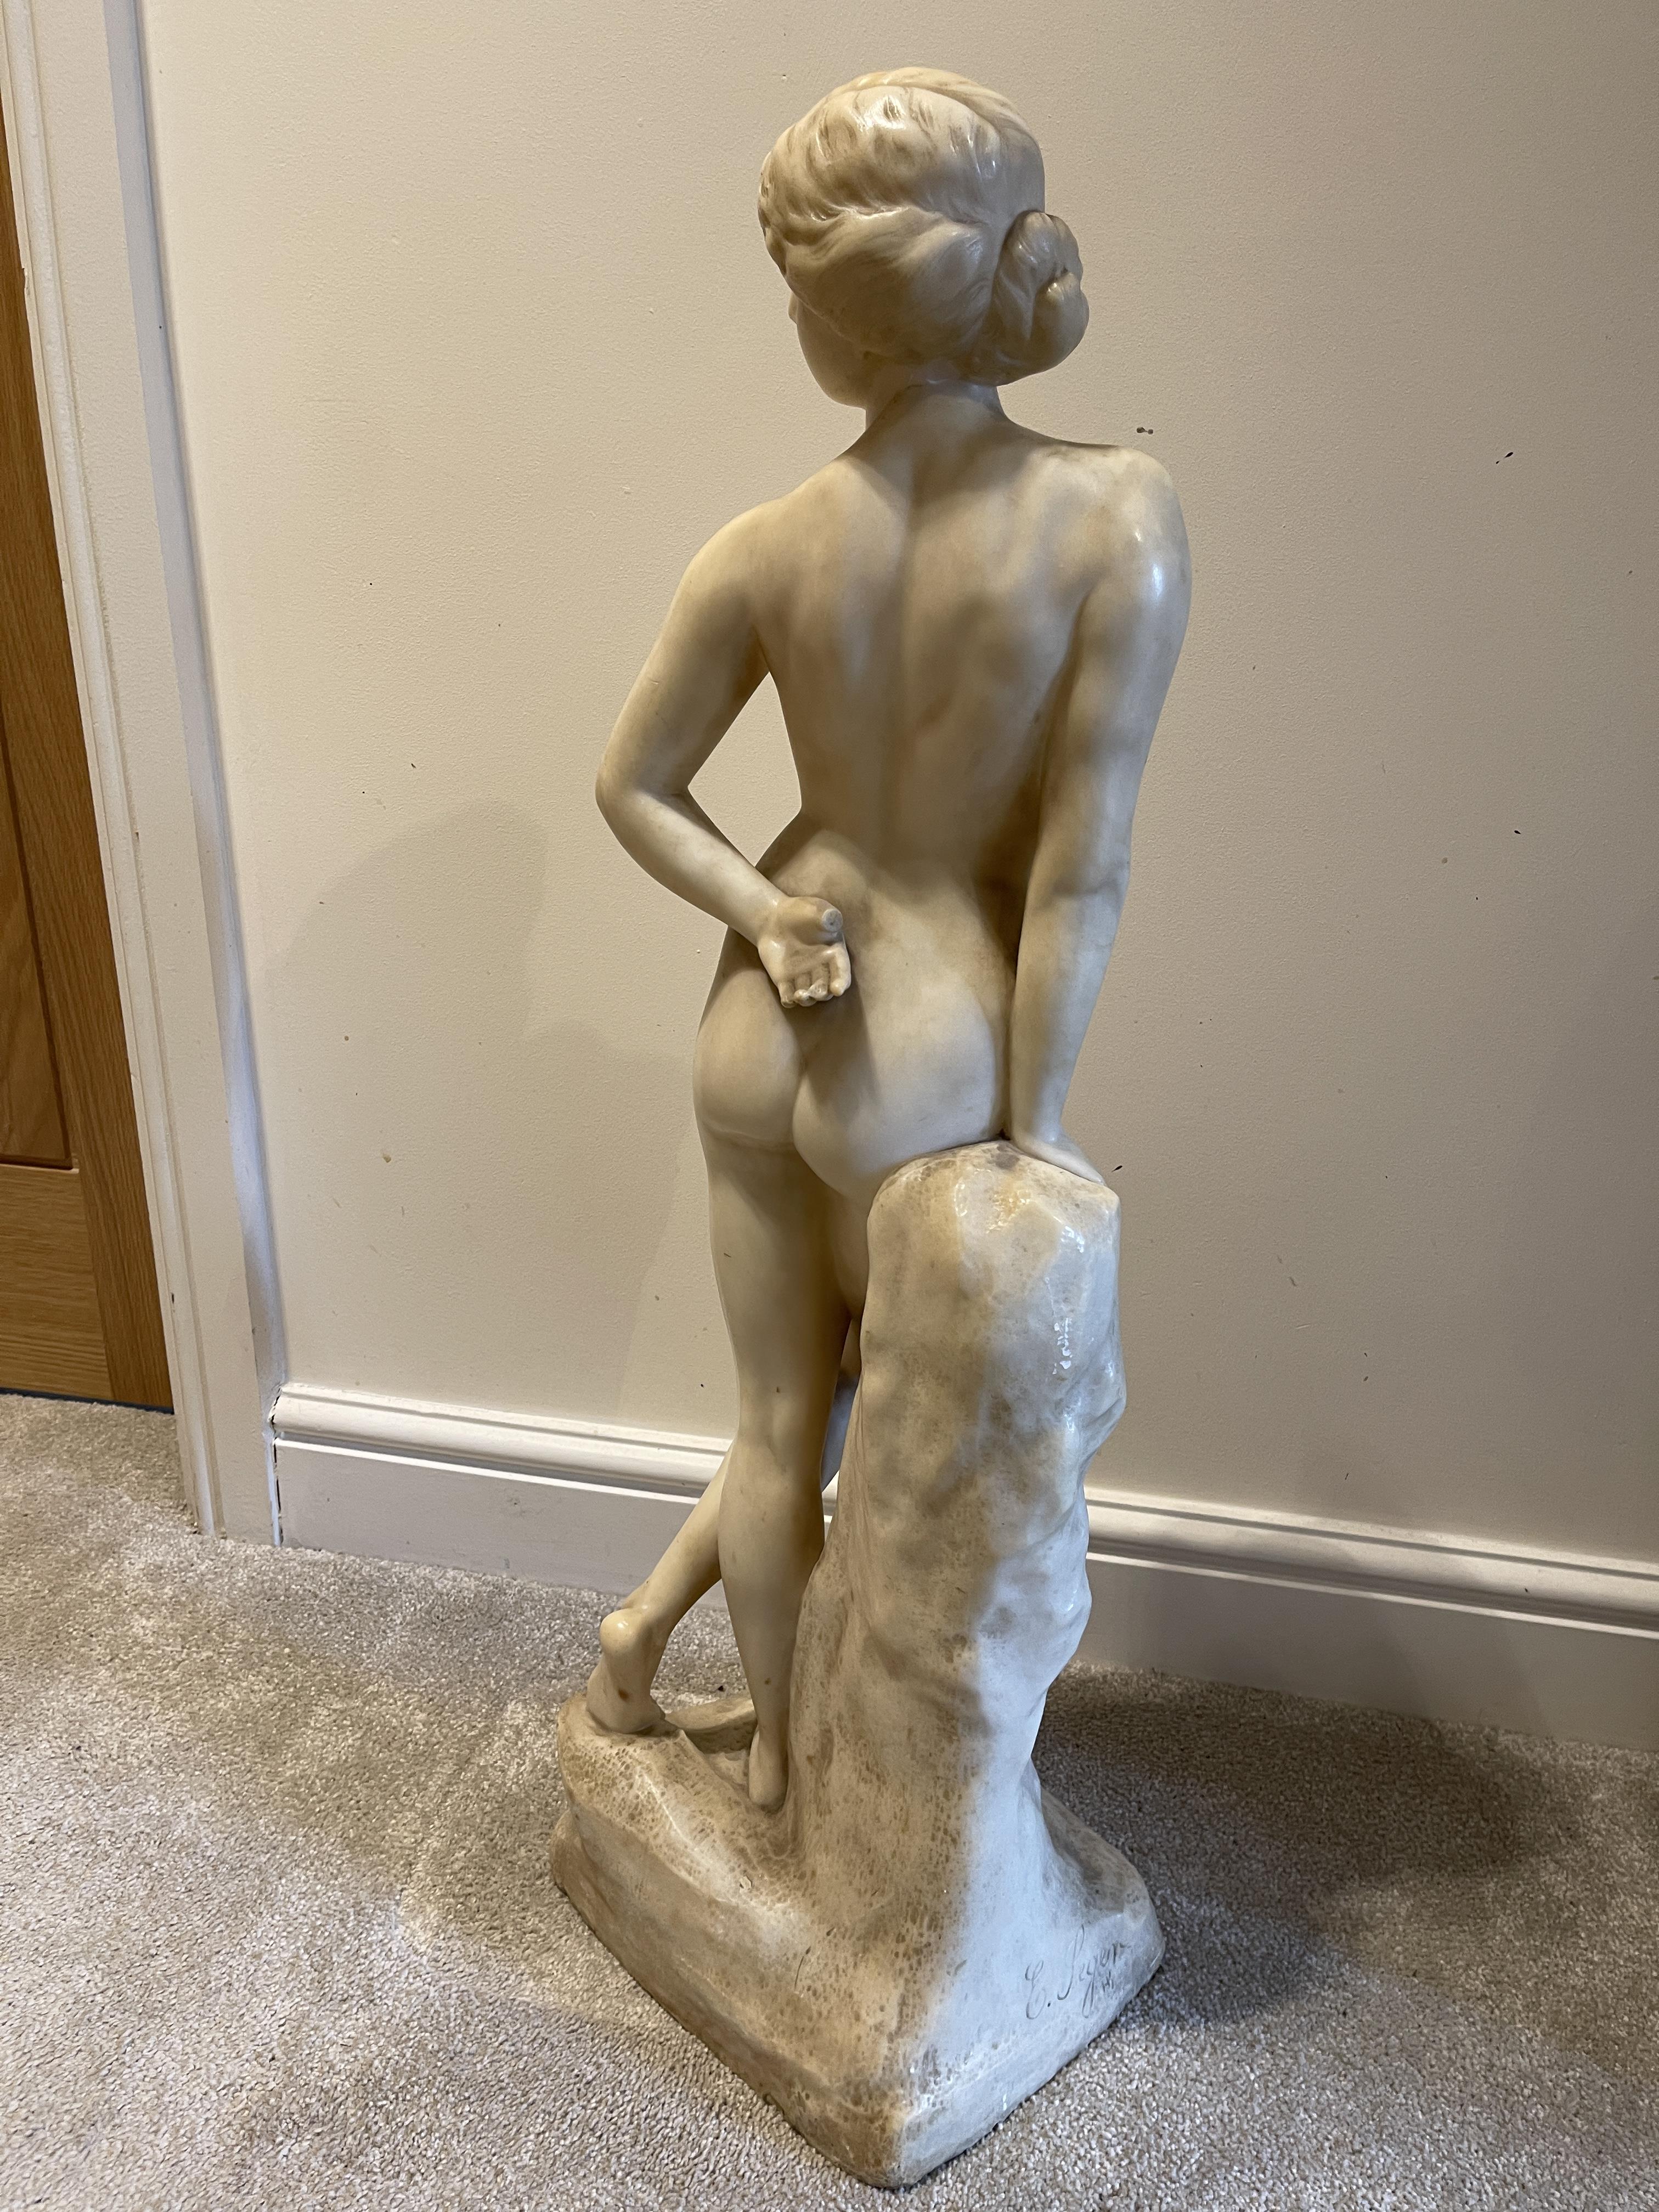 Ernst Seger Jugendschil Alabaster nude of a woman - Image 4 of 10